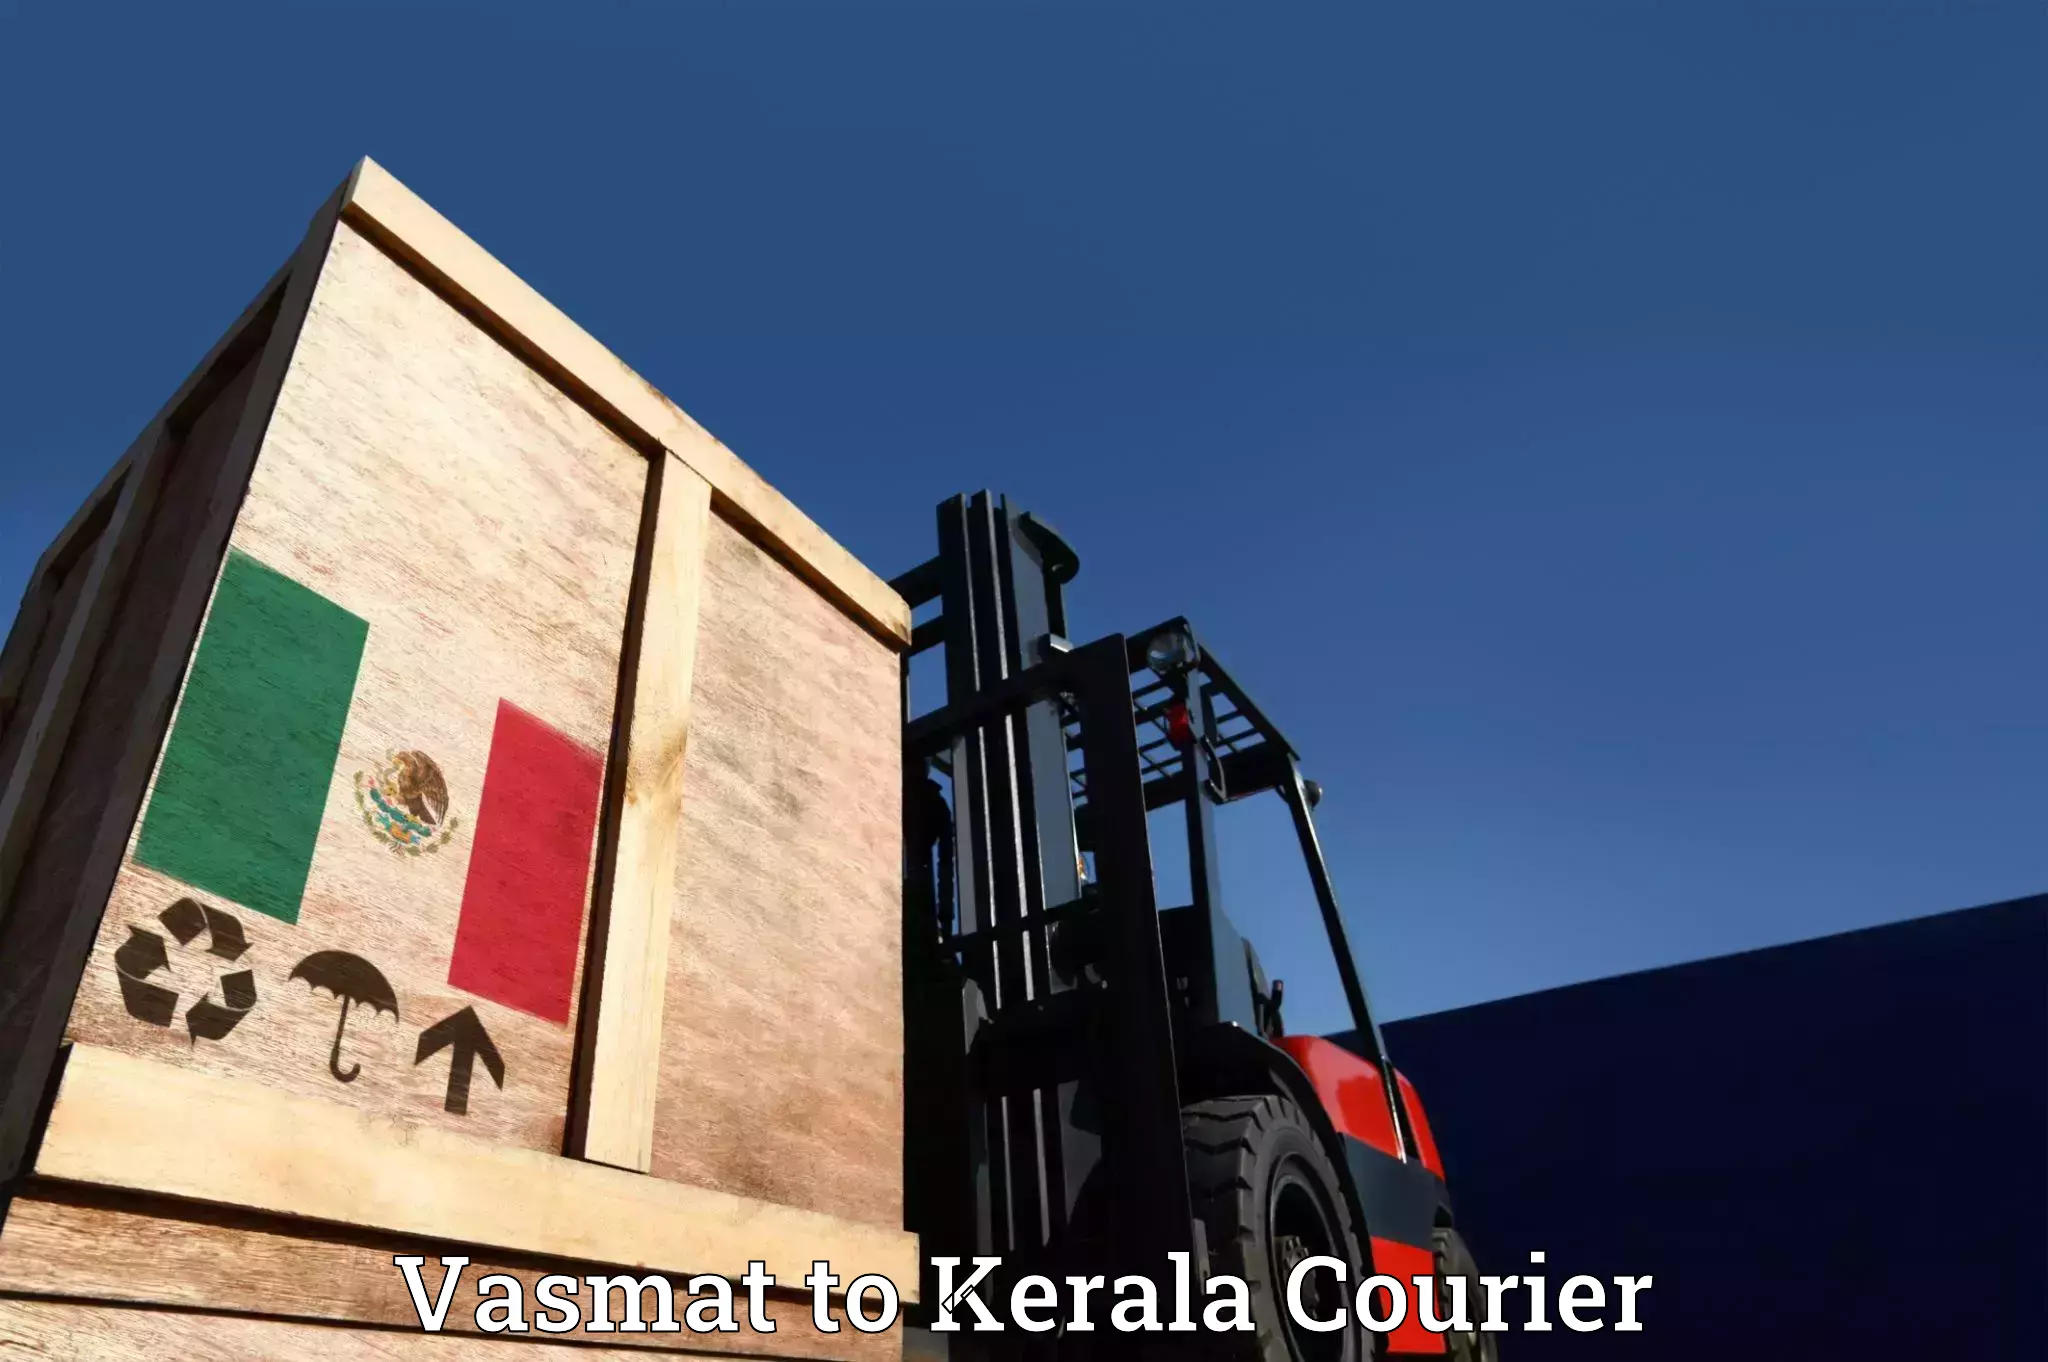 Professional moving company Vasmat to Kattappana